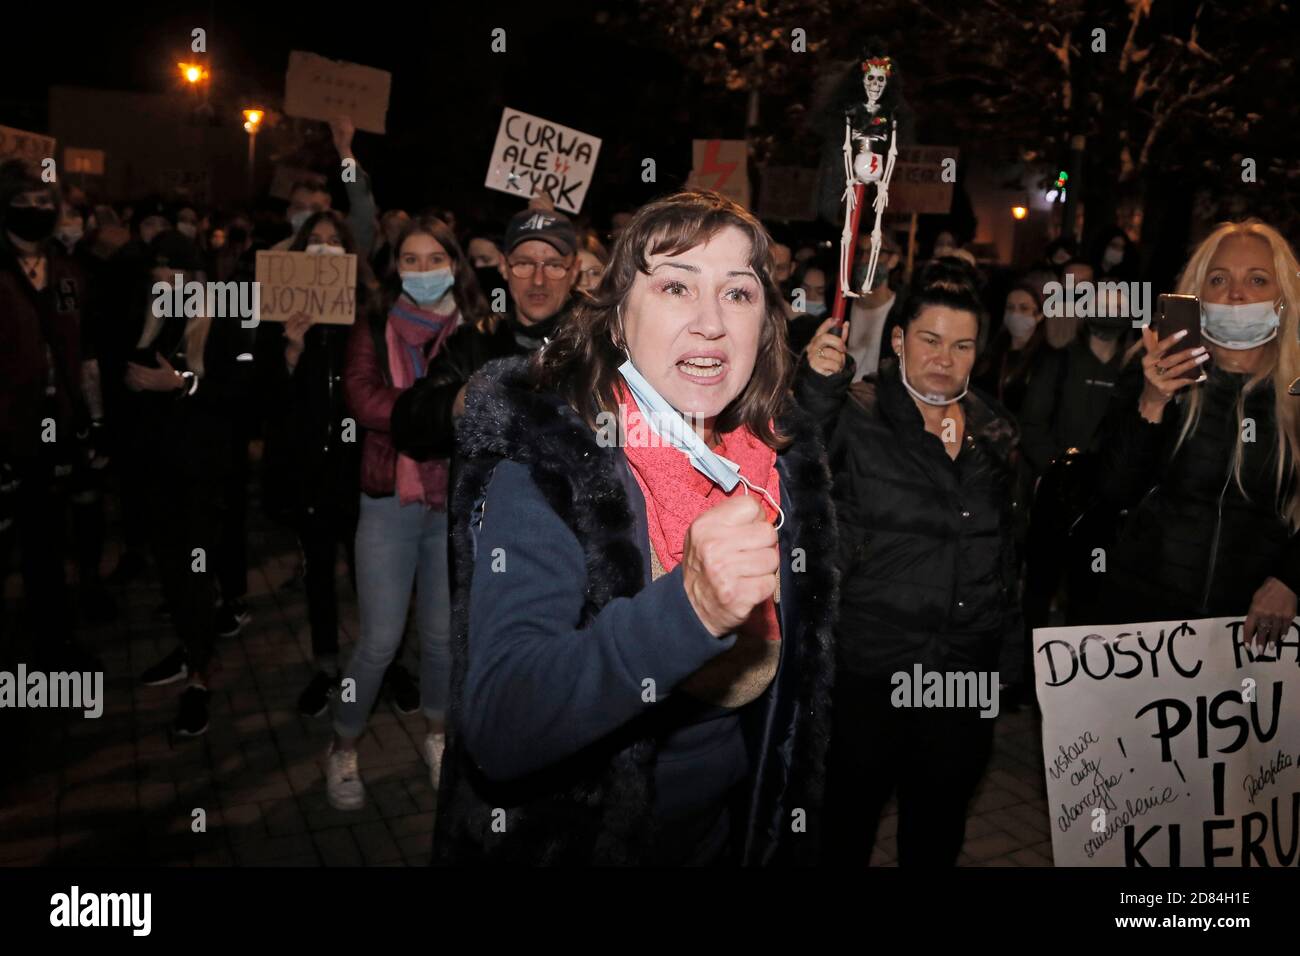 Poche migliaia di giovani, soprattutto, hanno protestato contro l'inasprimento dei regolamenti anti-aborto il 26 ottobre 2020 a Katowice, Polonia. Foto Stock